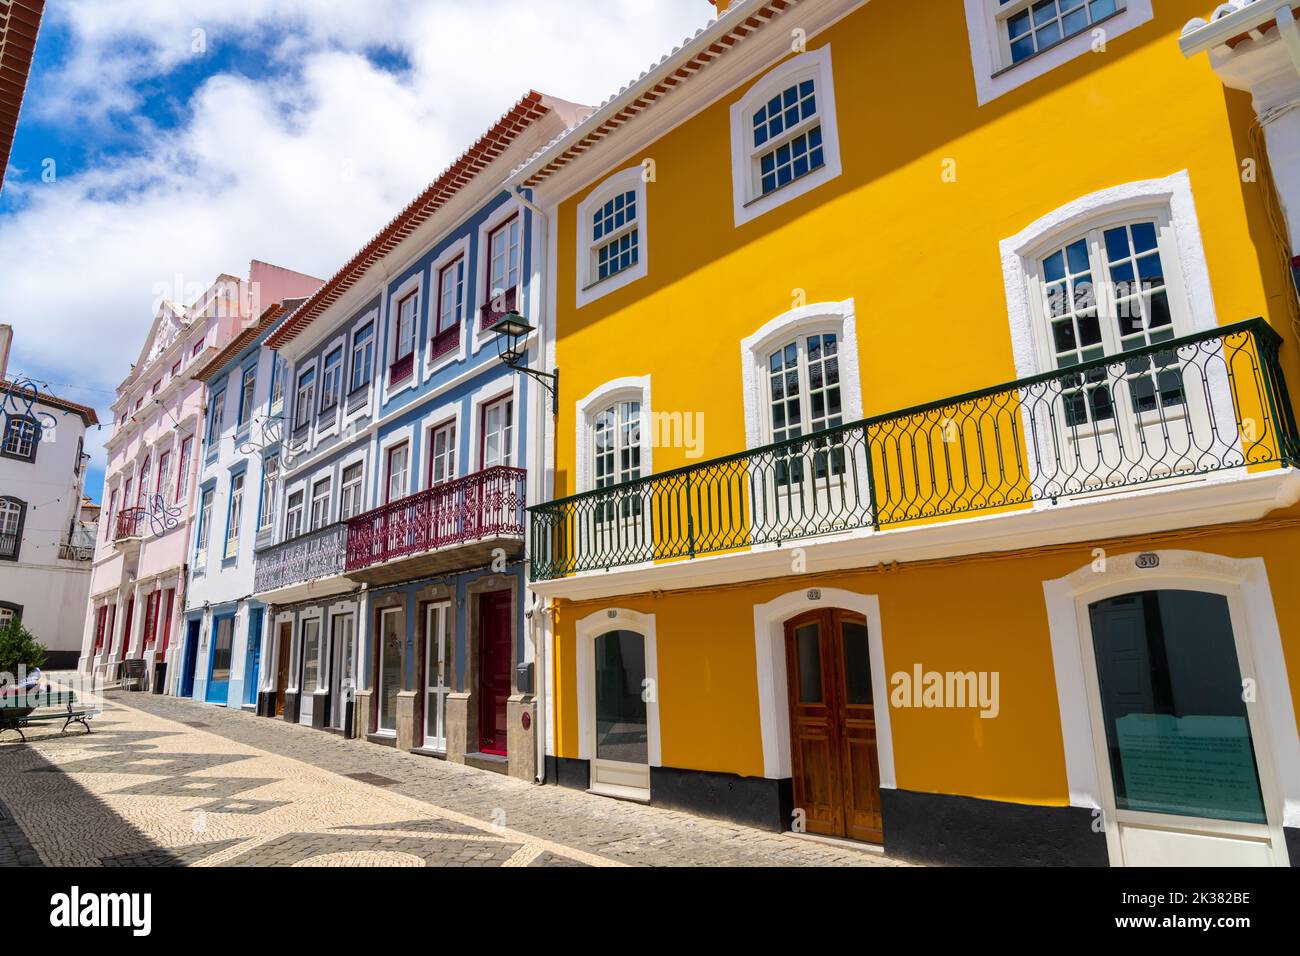 Le colorate facciate color pastello degli edifici in stile neoclassico lungo la passerella pedonale della Rua da Esperanca terminano al rosa Teatro Angrense, un teatro d'arte dello spettacolo ad Angra do Heroismo, Isola di Terceira, Azzorre, Portogallo. Foto Stock